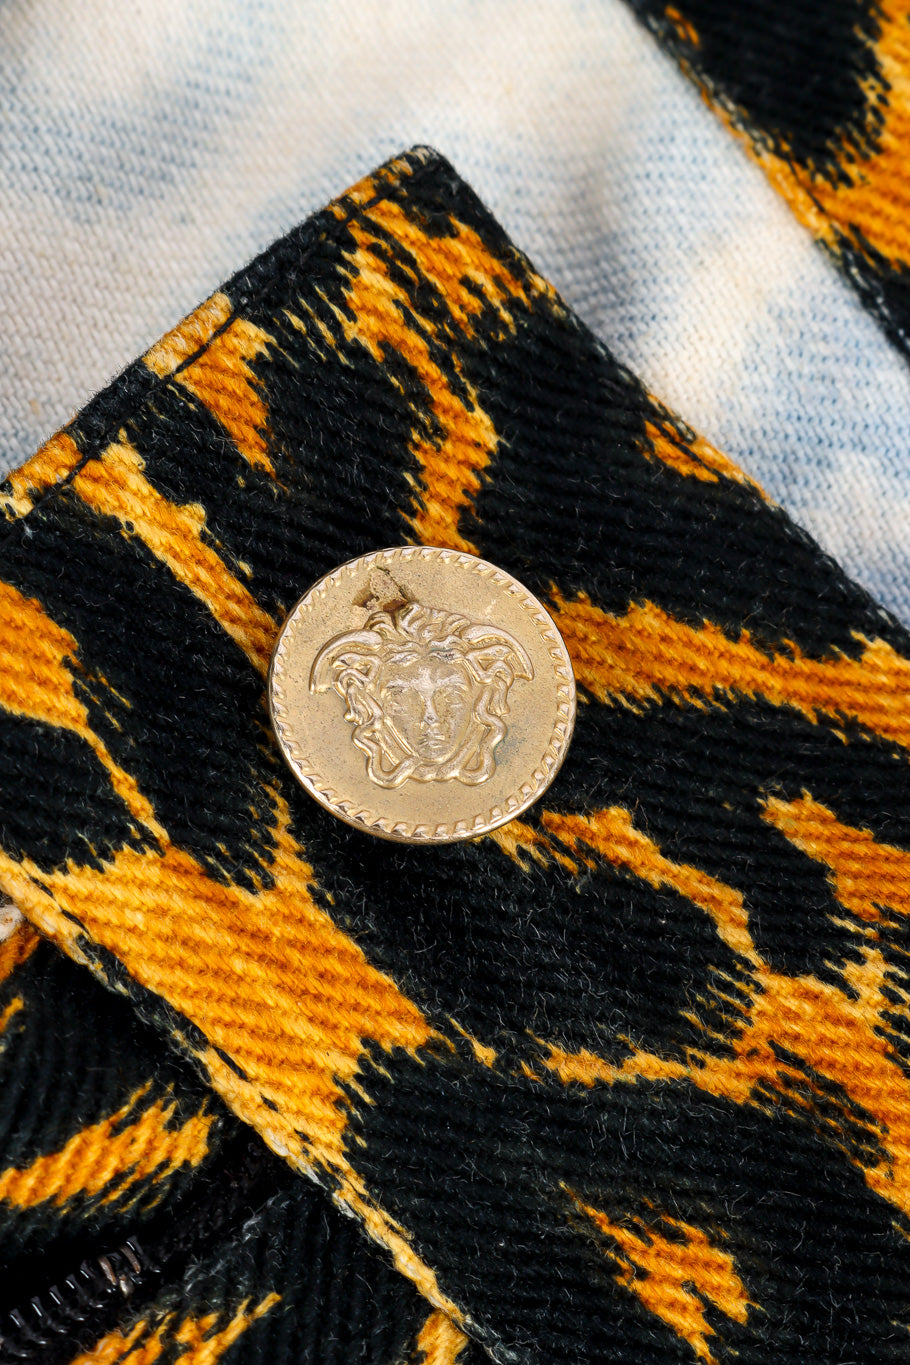 Versus Versace Leopard Print Denim Pant medallion button closeup @Recessla